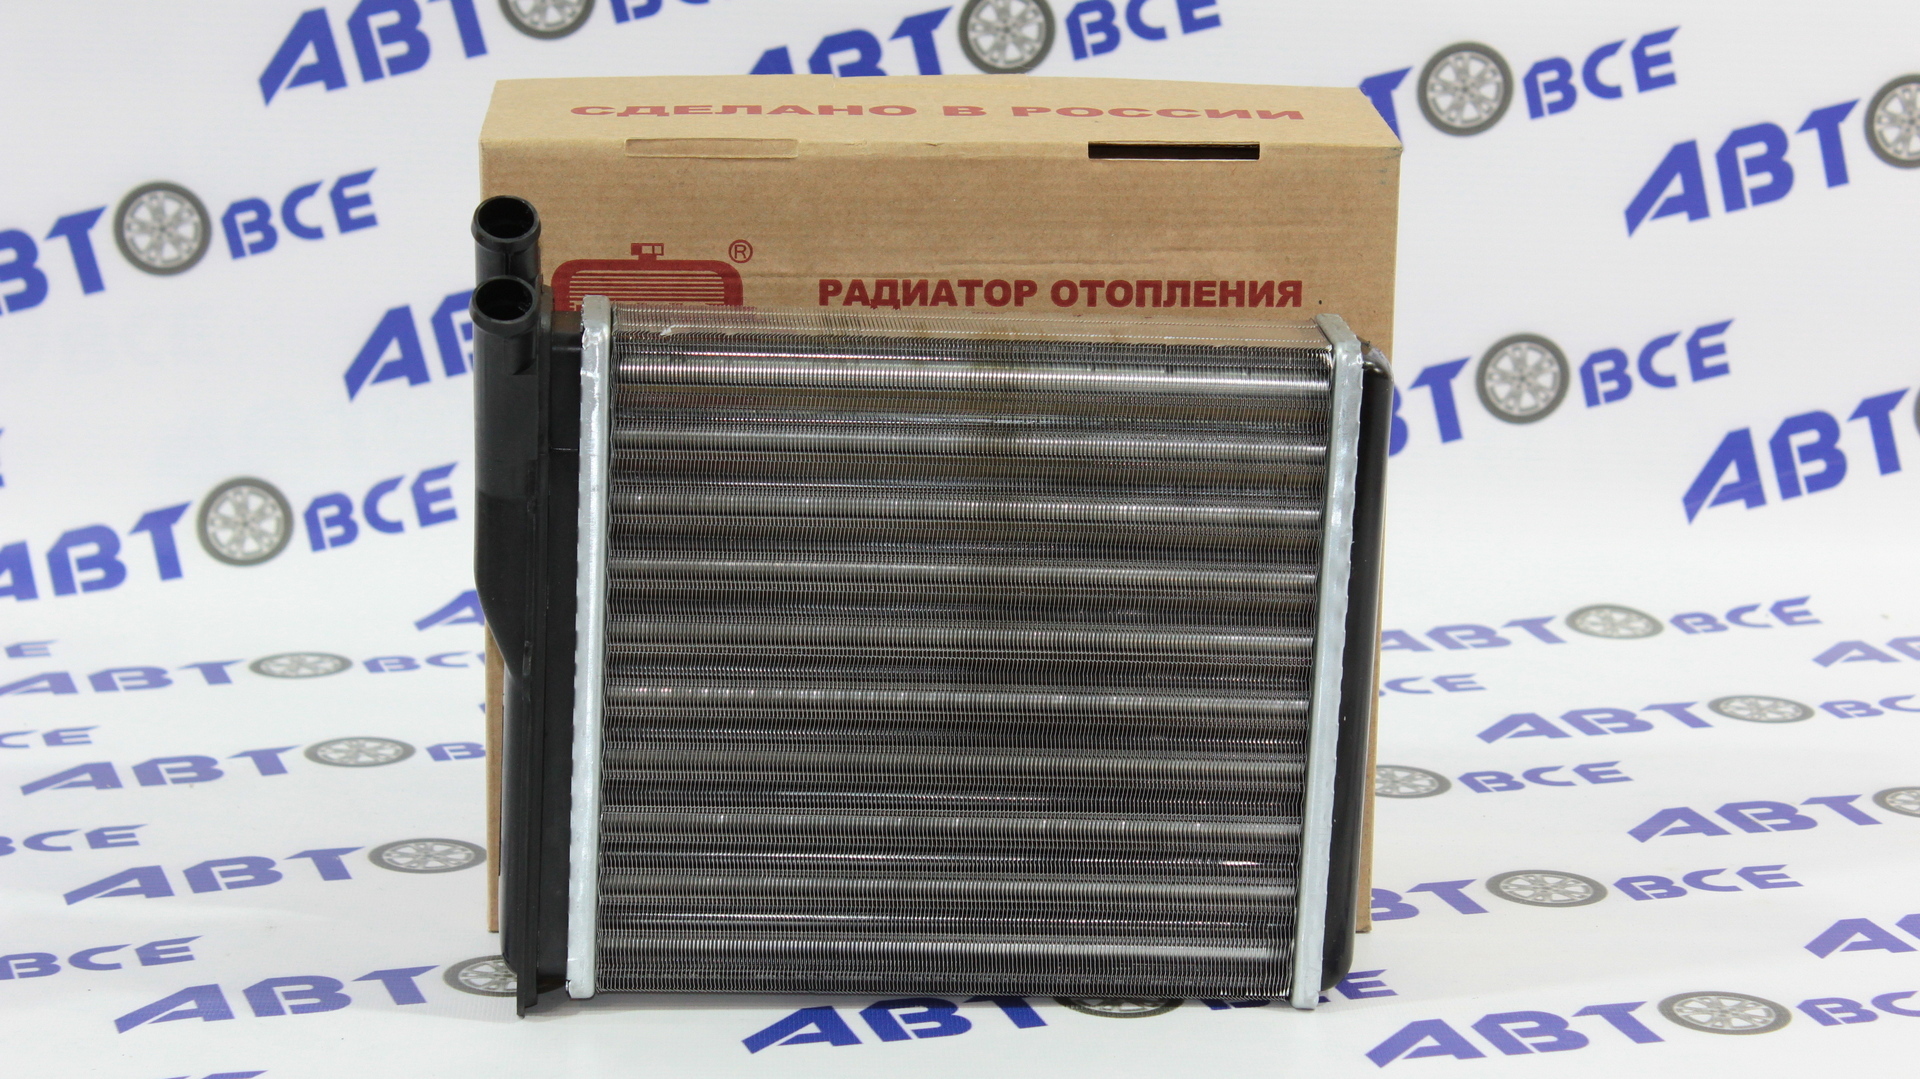 Радиатор отопителя (печки) ВАЗ-2123 Авто-Радиатор